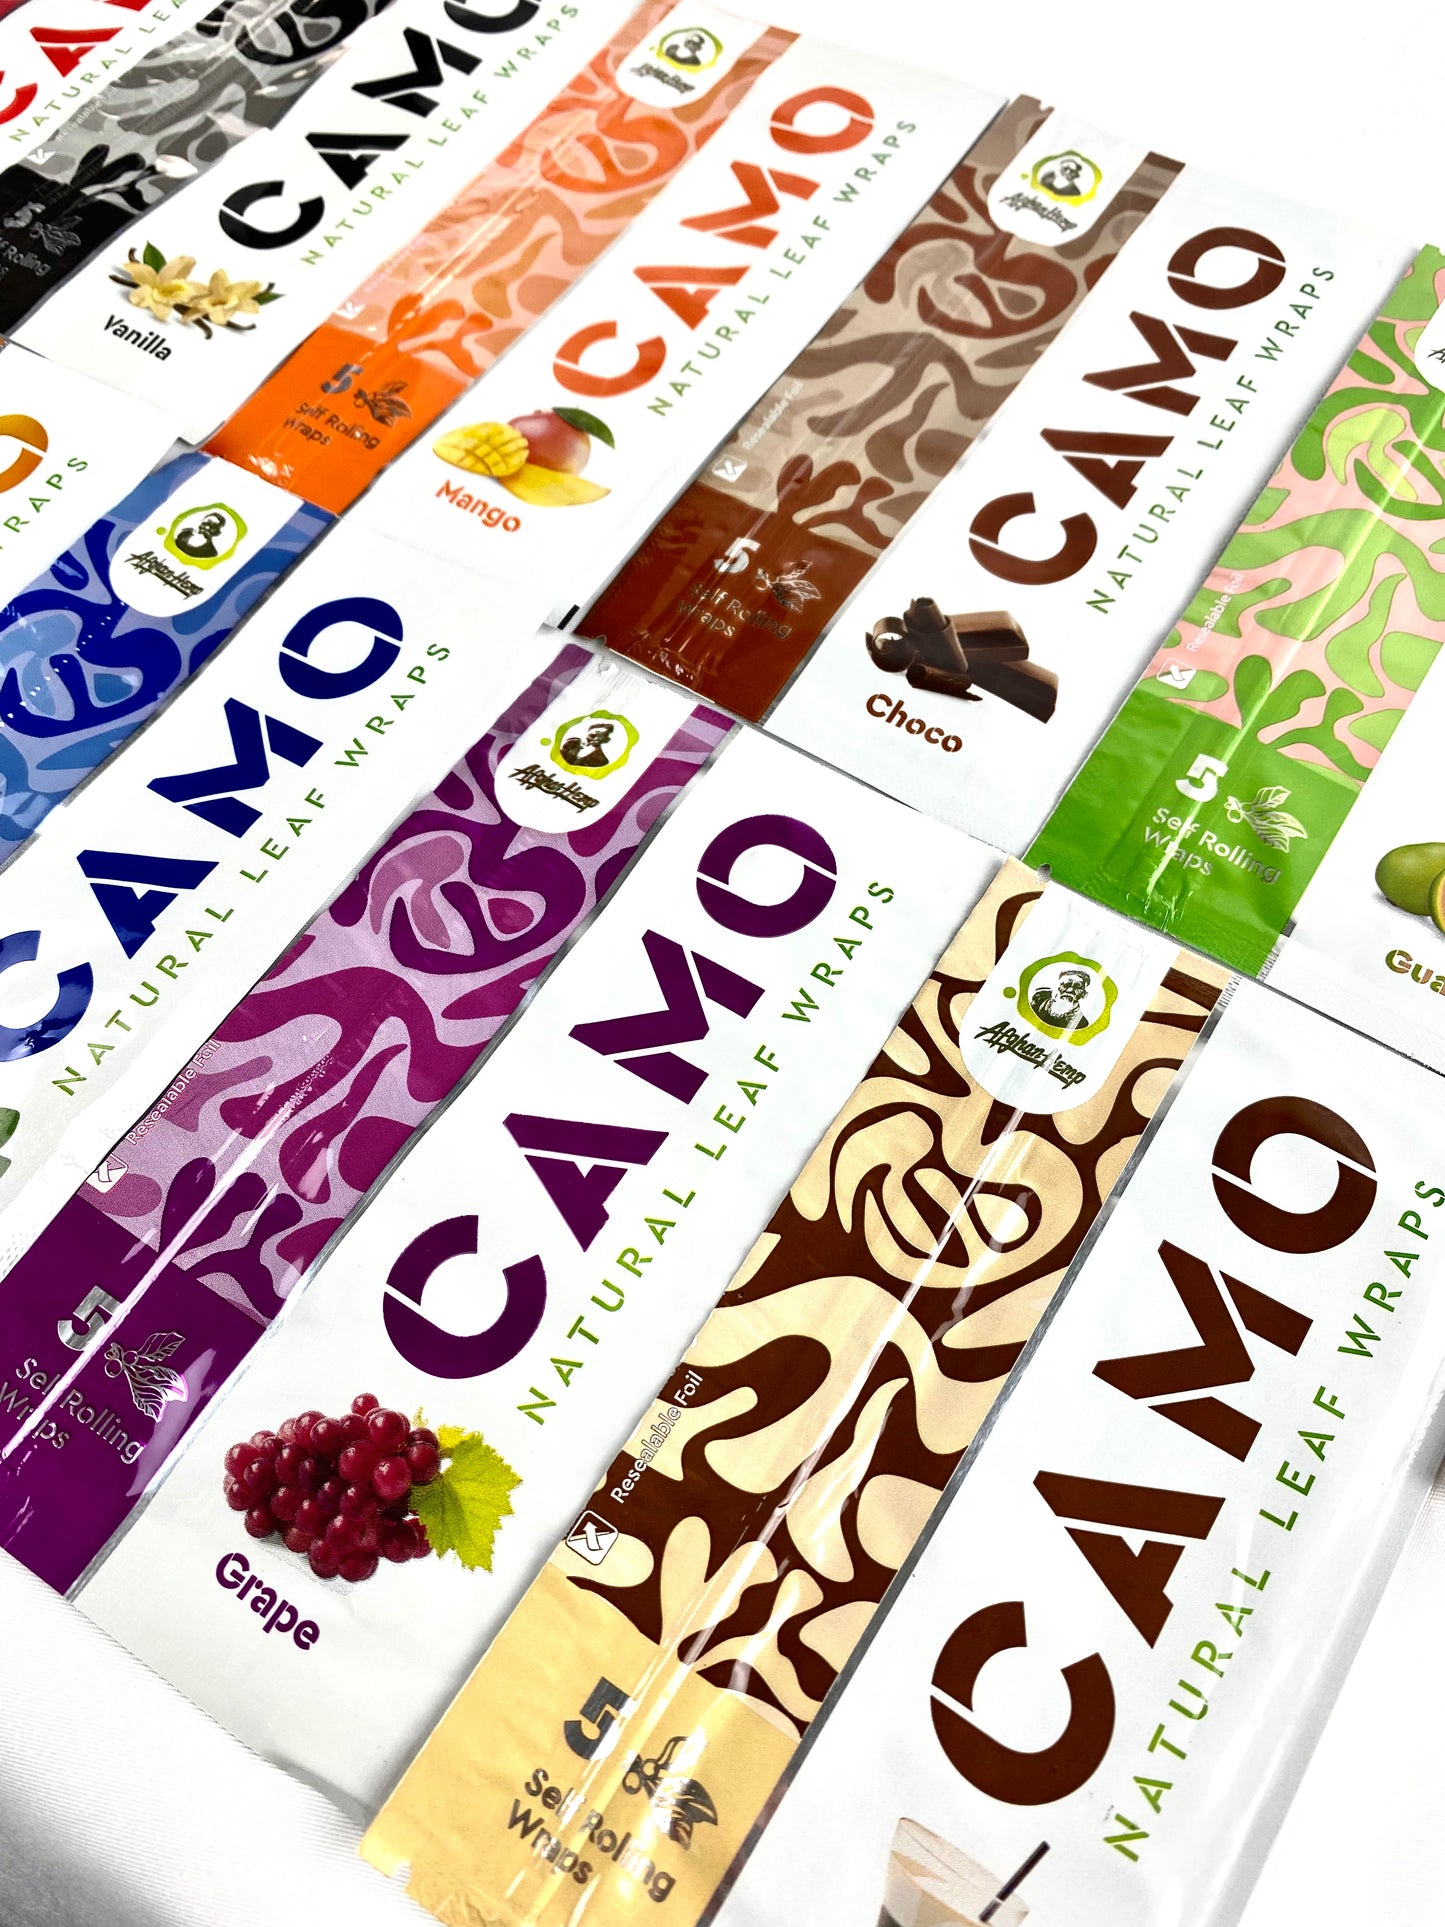 CAMO self-rolling leaf wraps (11 Flavor Sampler Pack)